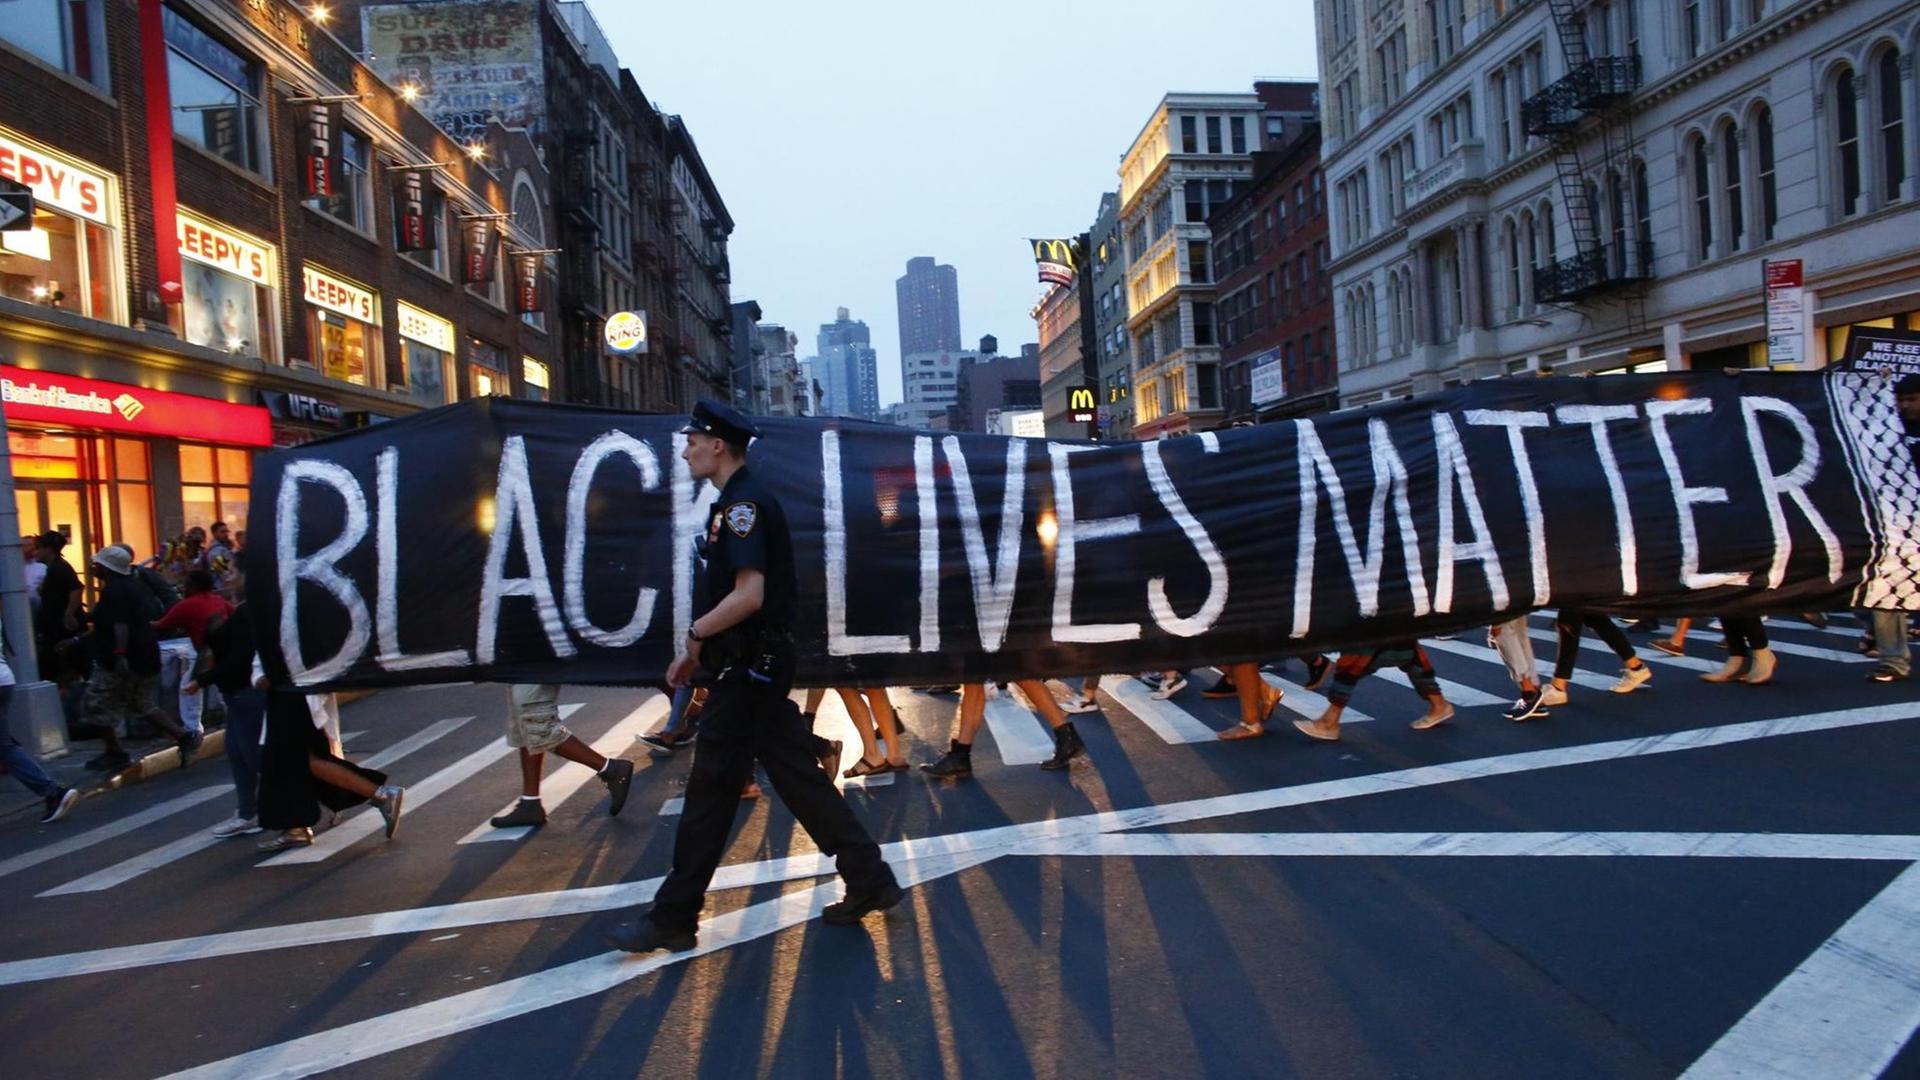 Bei einer Demonstration im Rahmen der "Black-lives-matter"-Bewegung in New York geht ein Polizist vor einem Transparent.